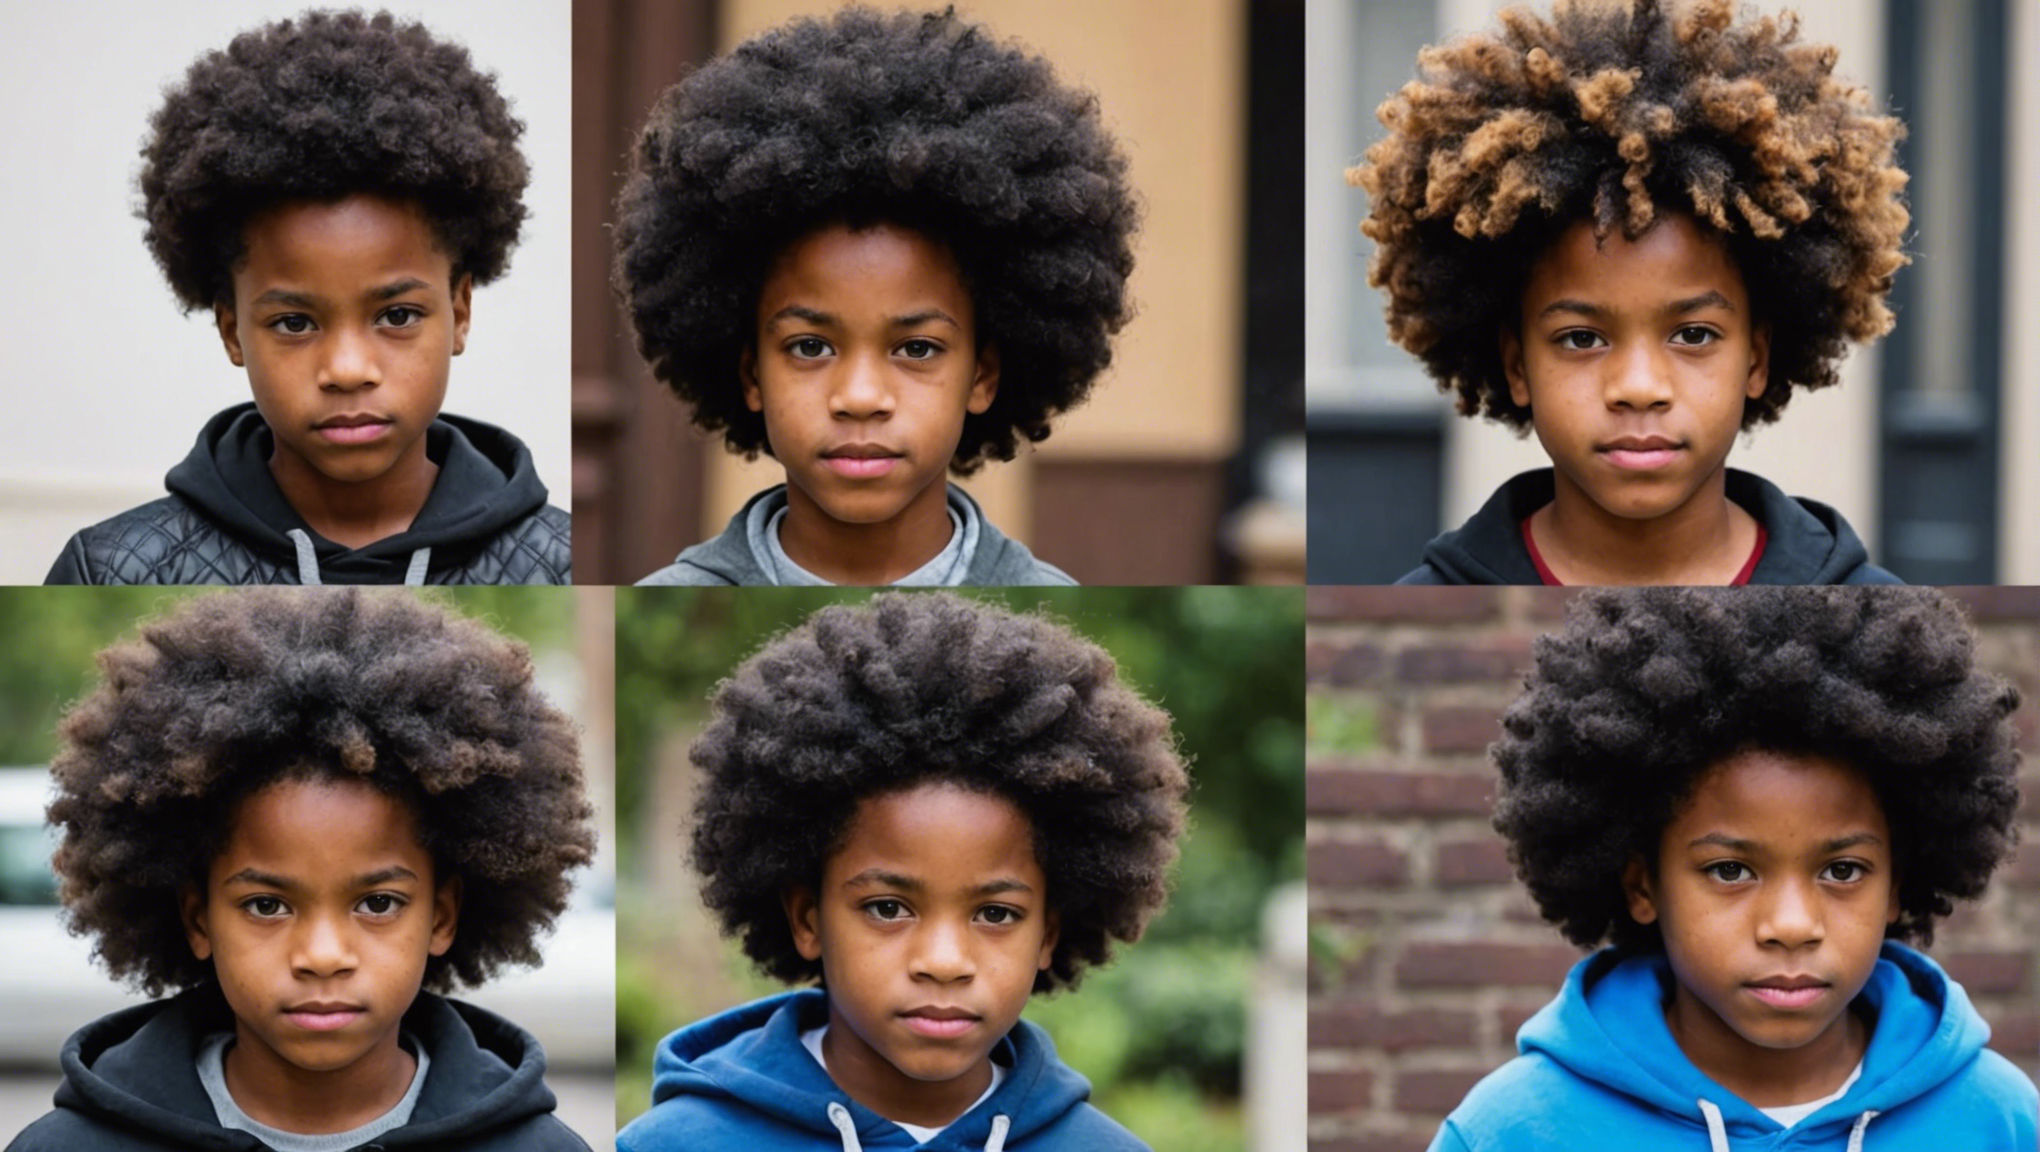 découvrez nos astuces et conseils pour réussir la coiffure d'un garçon afro avec style et facilité.